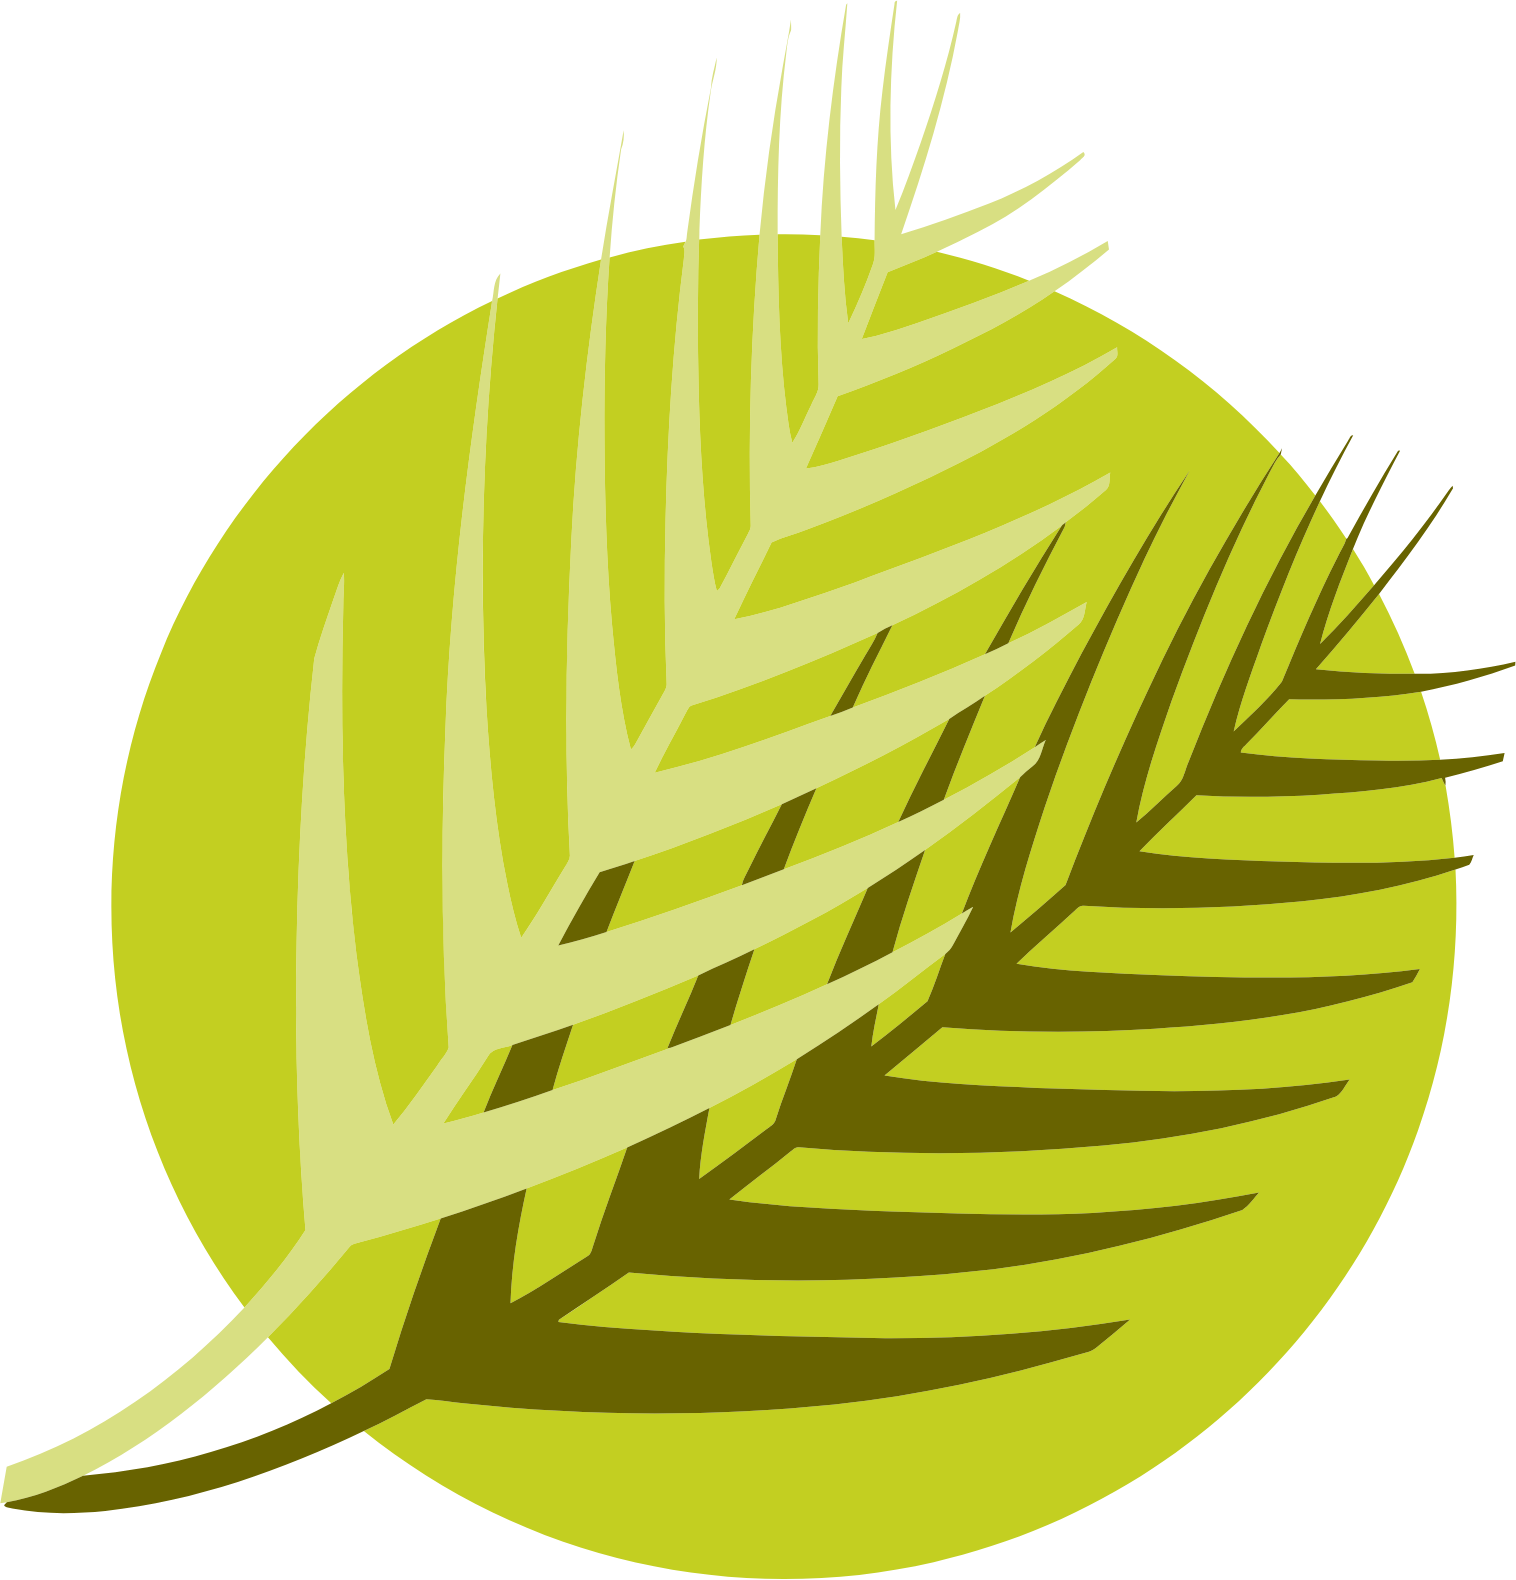 Al Meera Consumer Goods Company logo (PNG transparent)